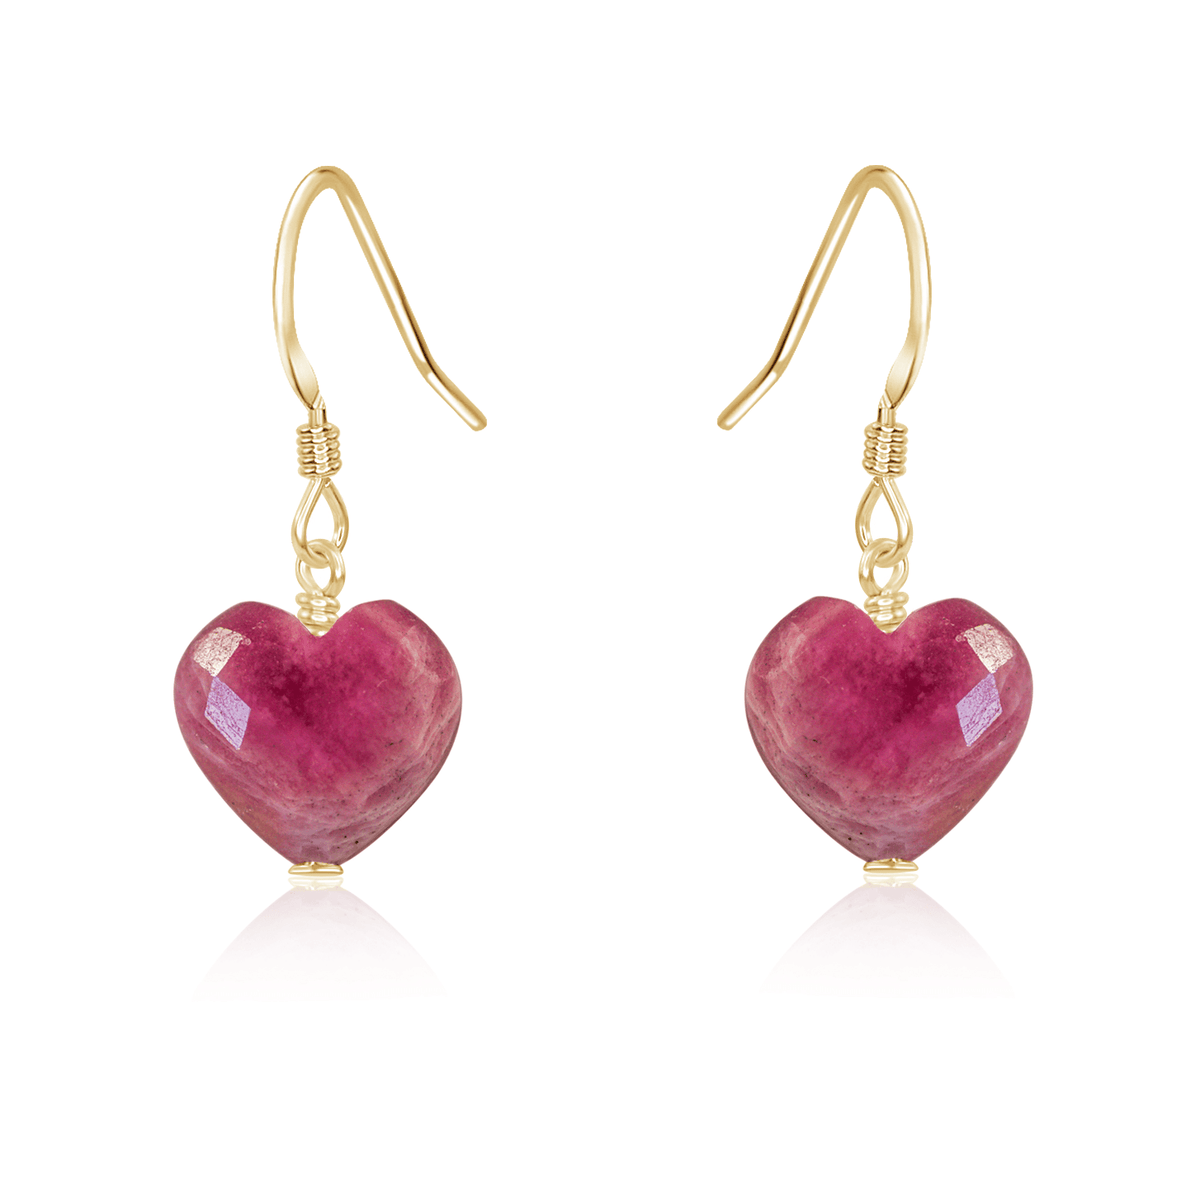 Ruby Crystal Heart Dangle Earrings - Ruby Crystal Heart Dangle Earrings - 14k Gold Fill - Luna Tide Handmade Crystal Jewellery